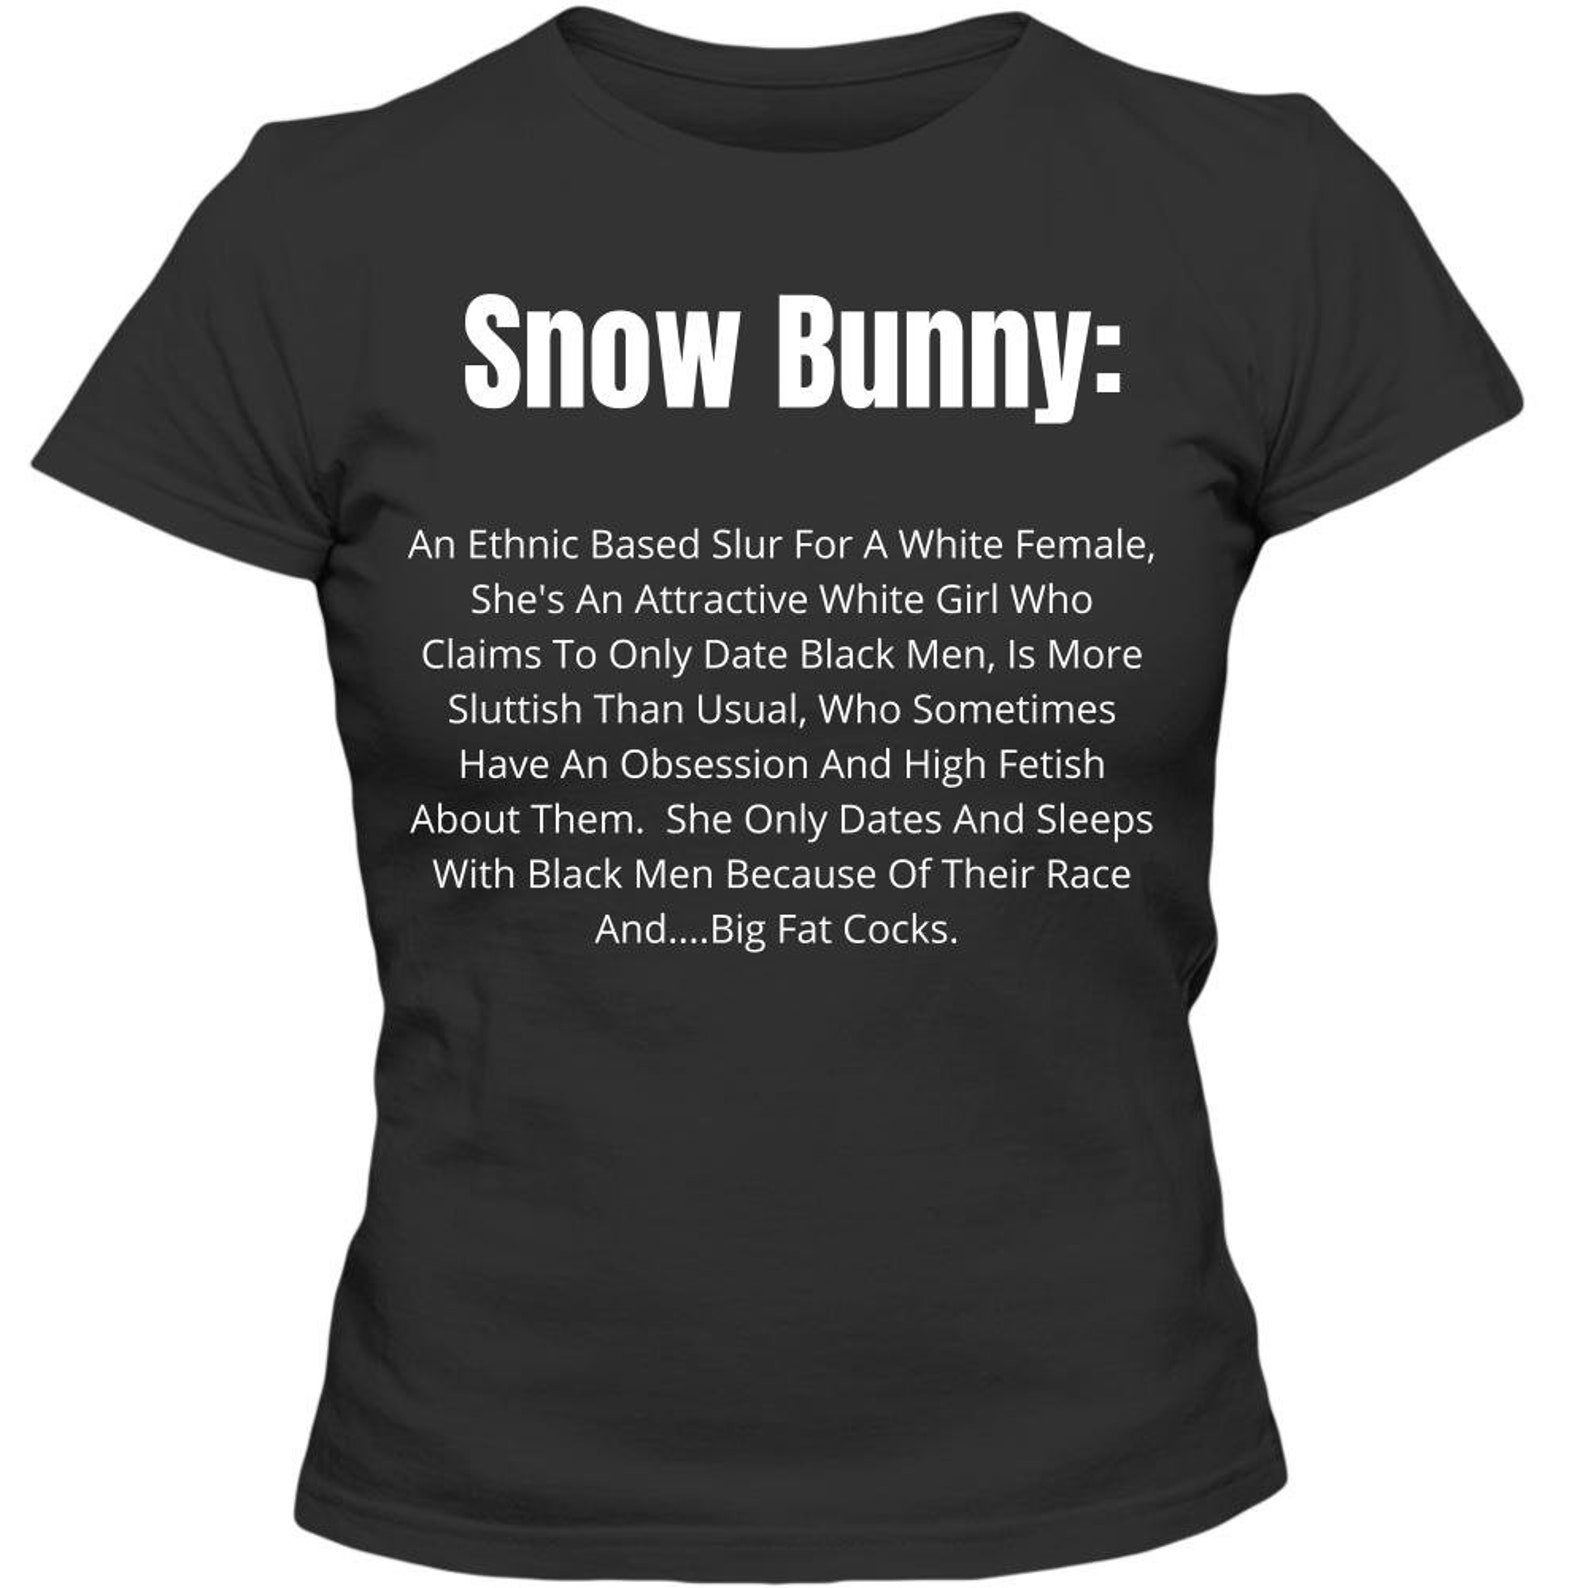 Snow bunny bbc